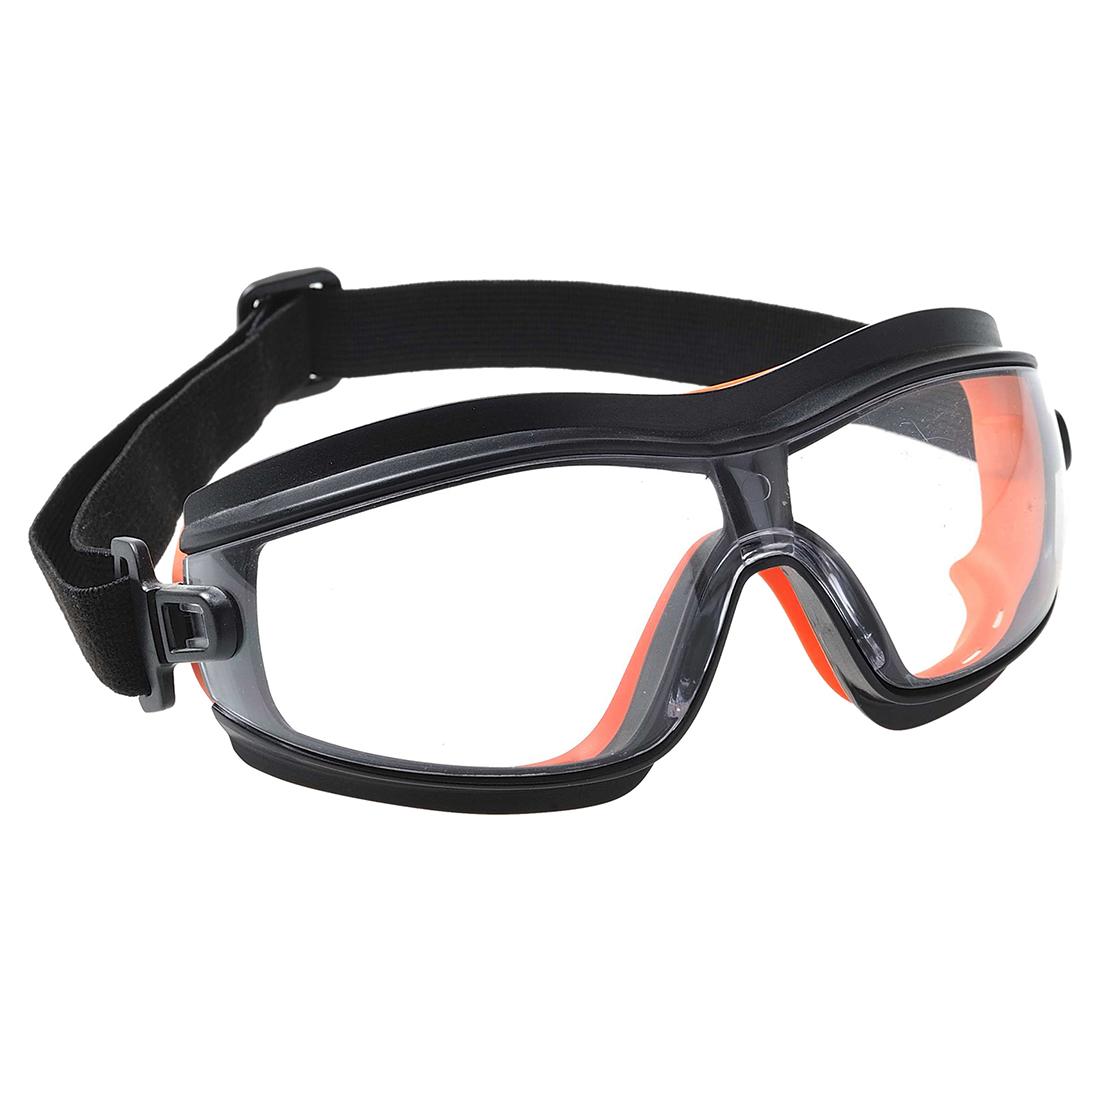 Защитные очки требования. Очки Safety Goggles. Очки защитные "Safety " цв белый. DELTAPLUS en166. Очки защитные очк-001.